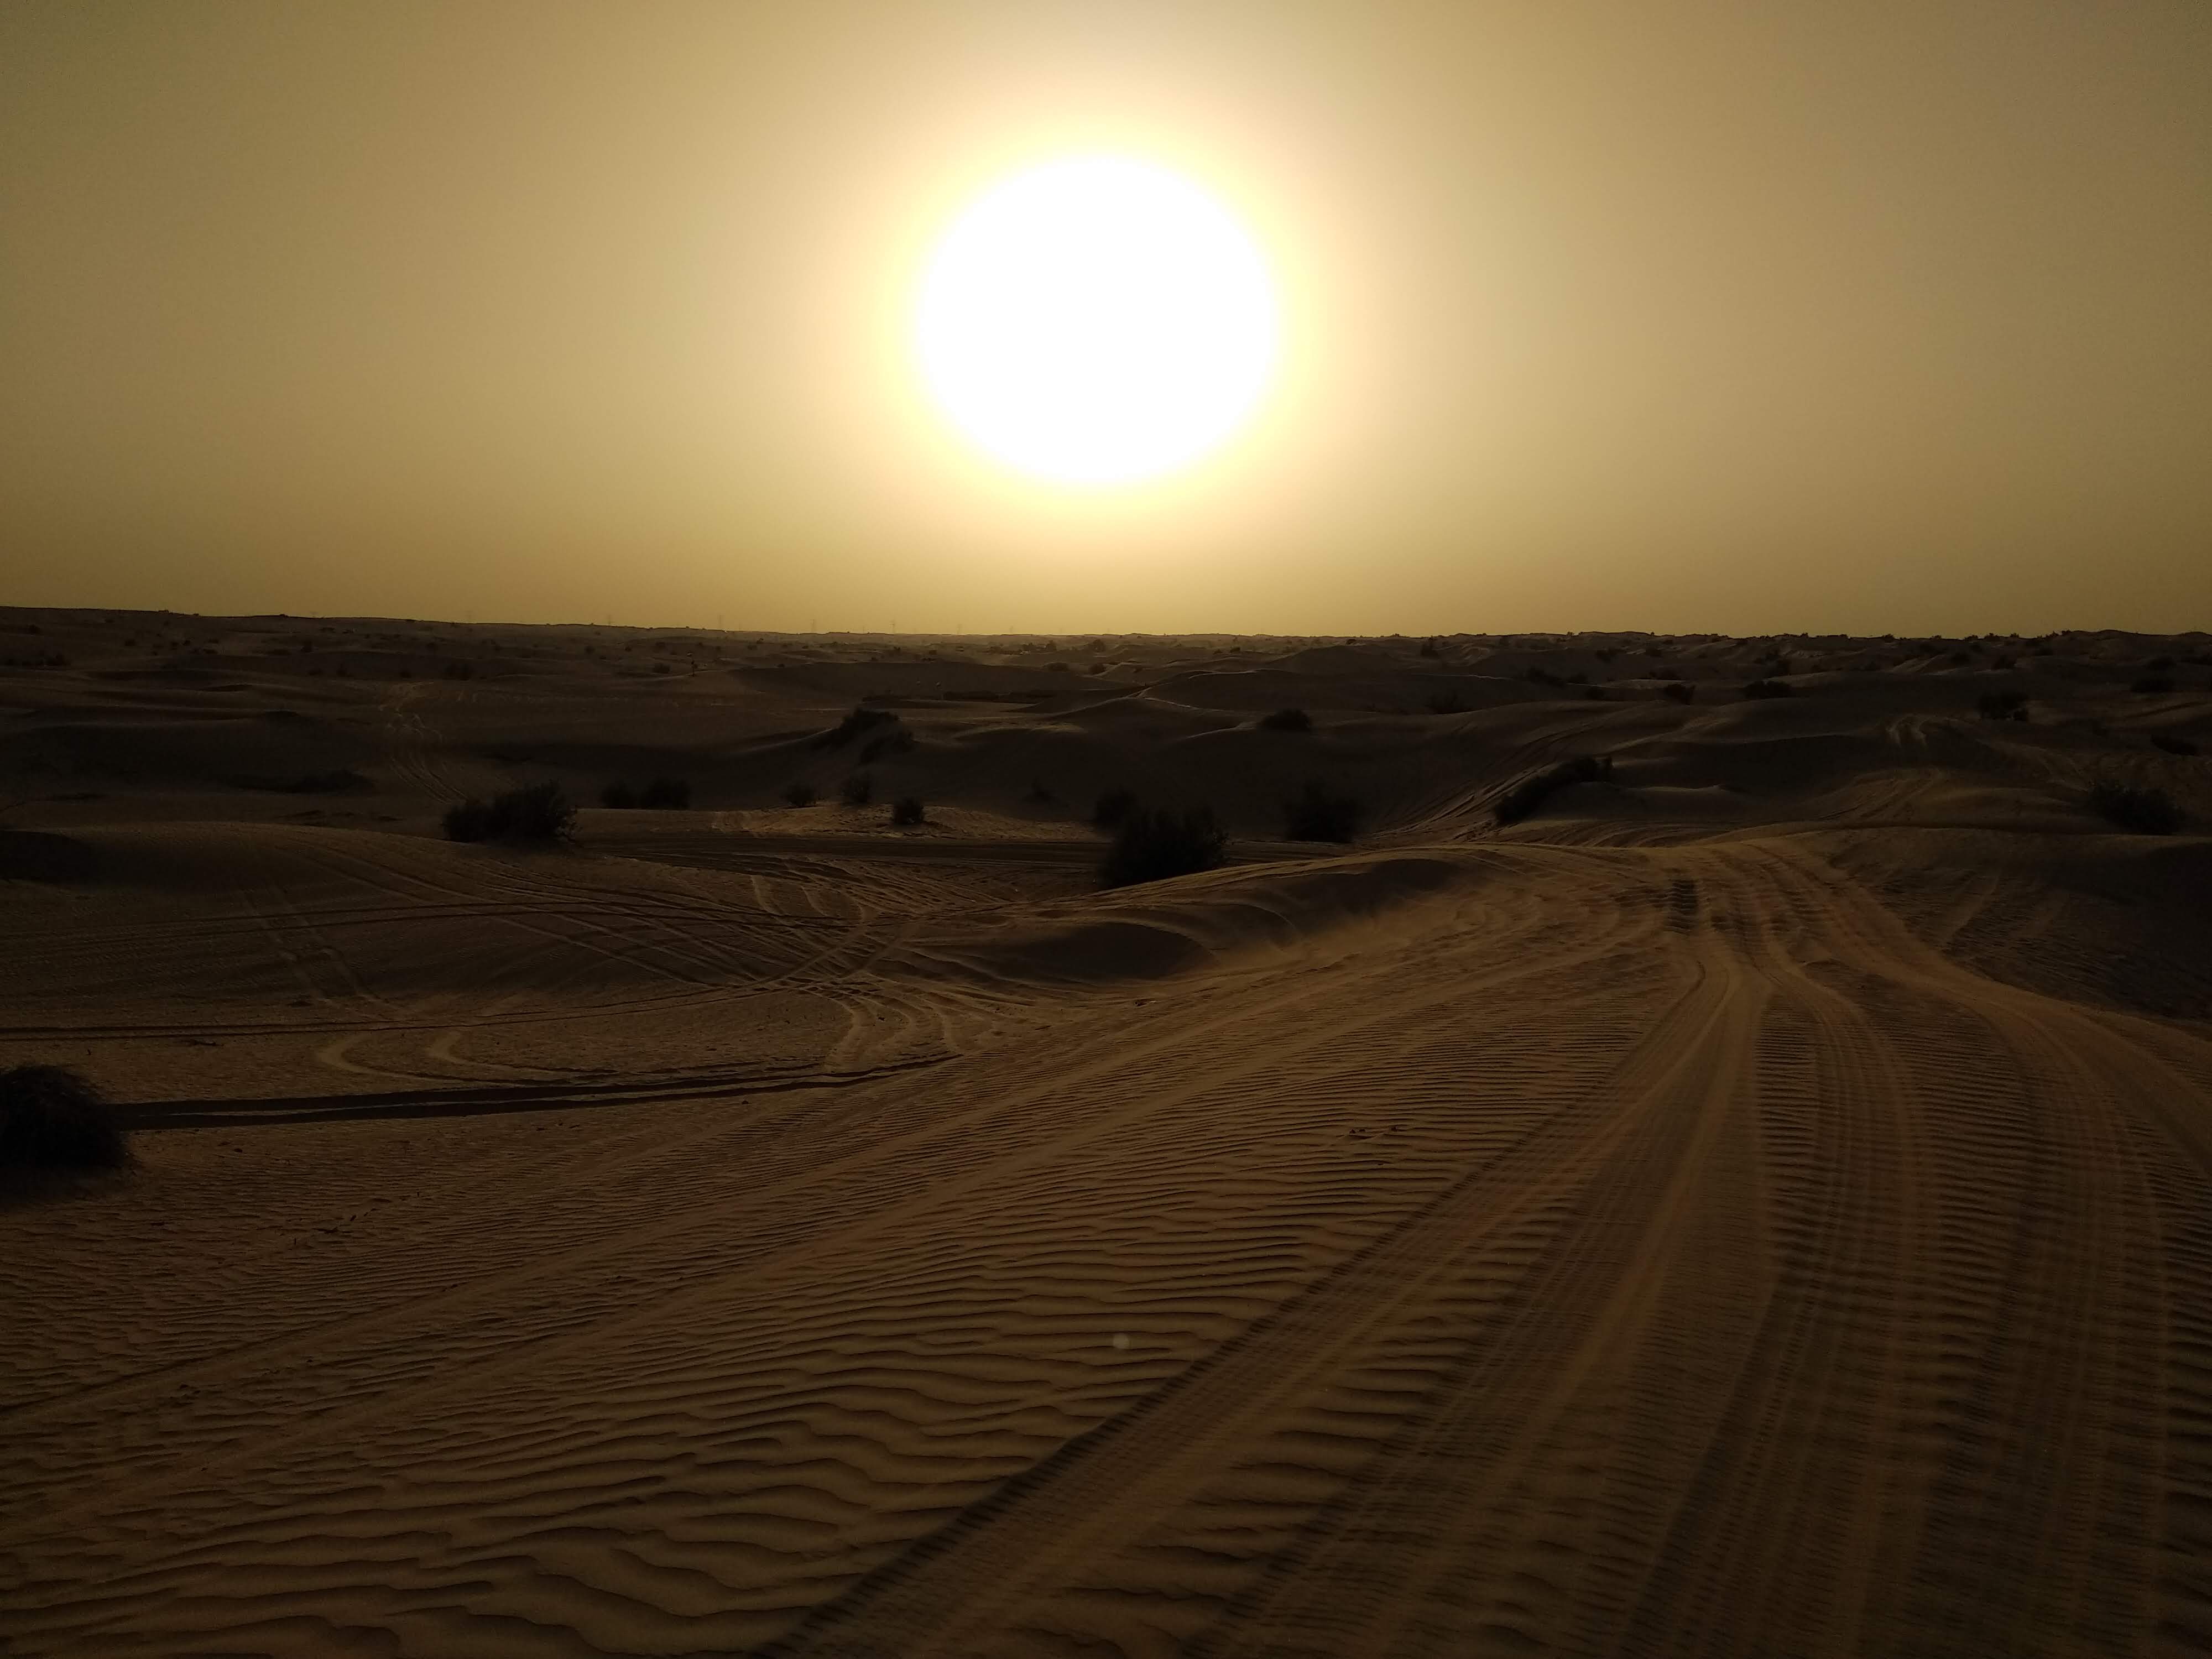 Sunset in Dubai desert, UAE